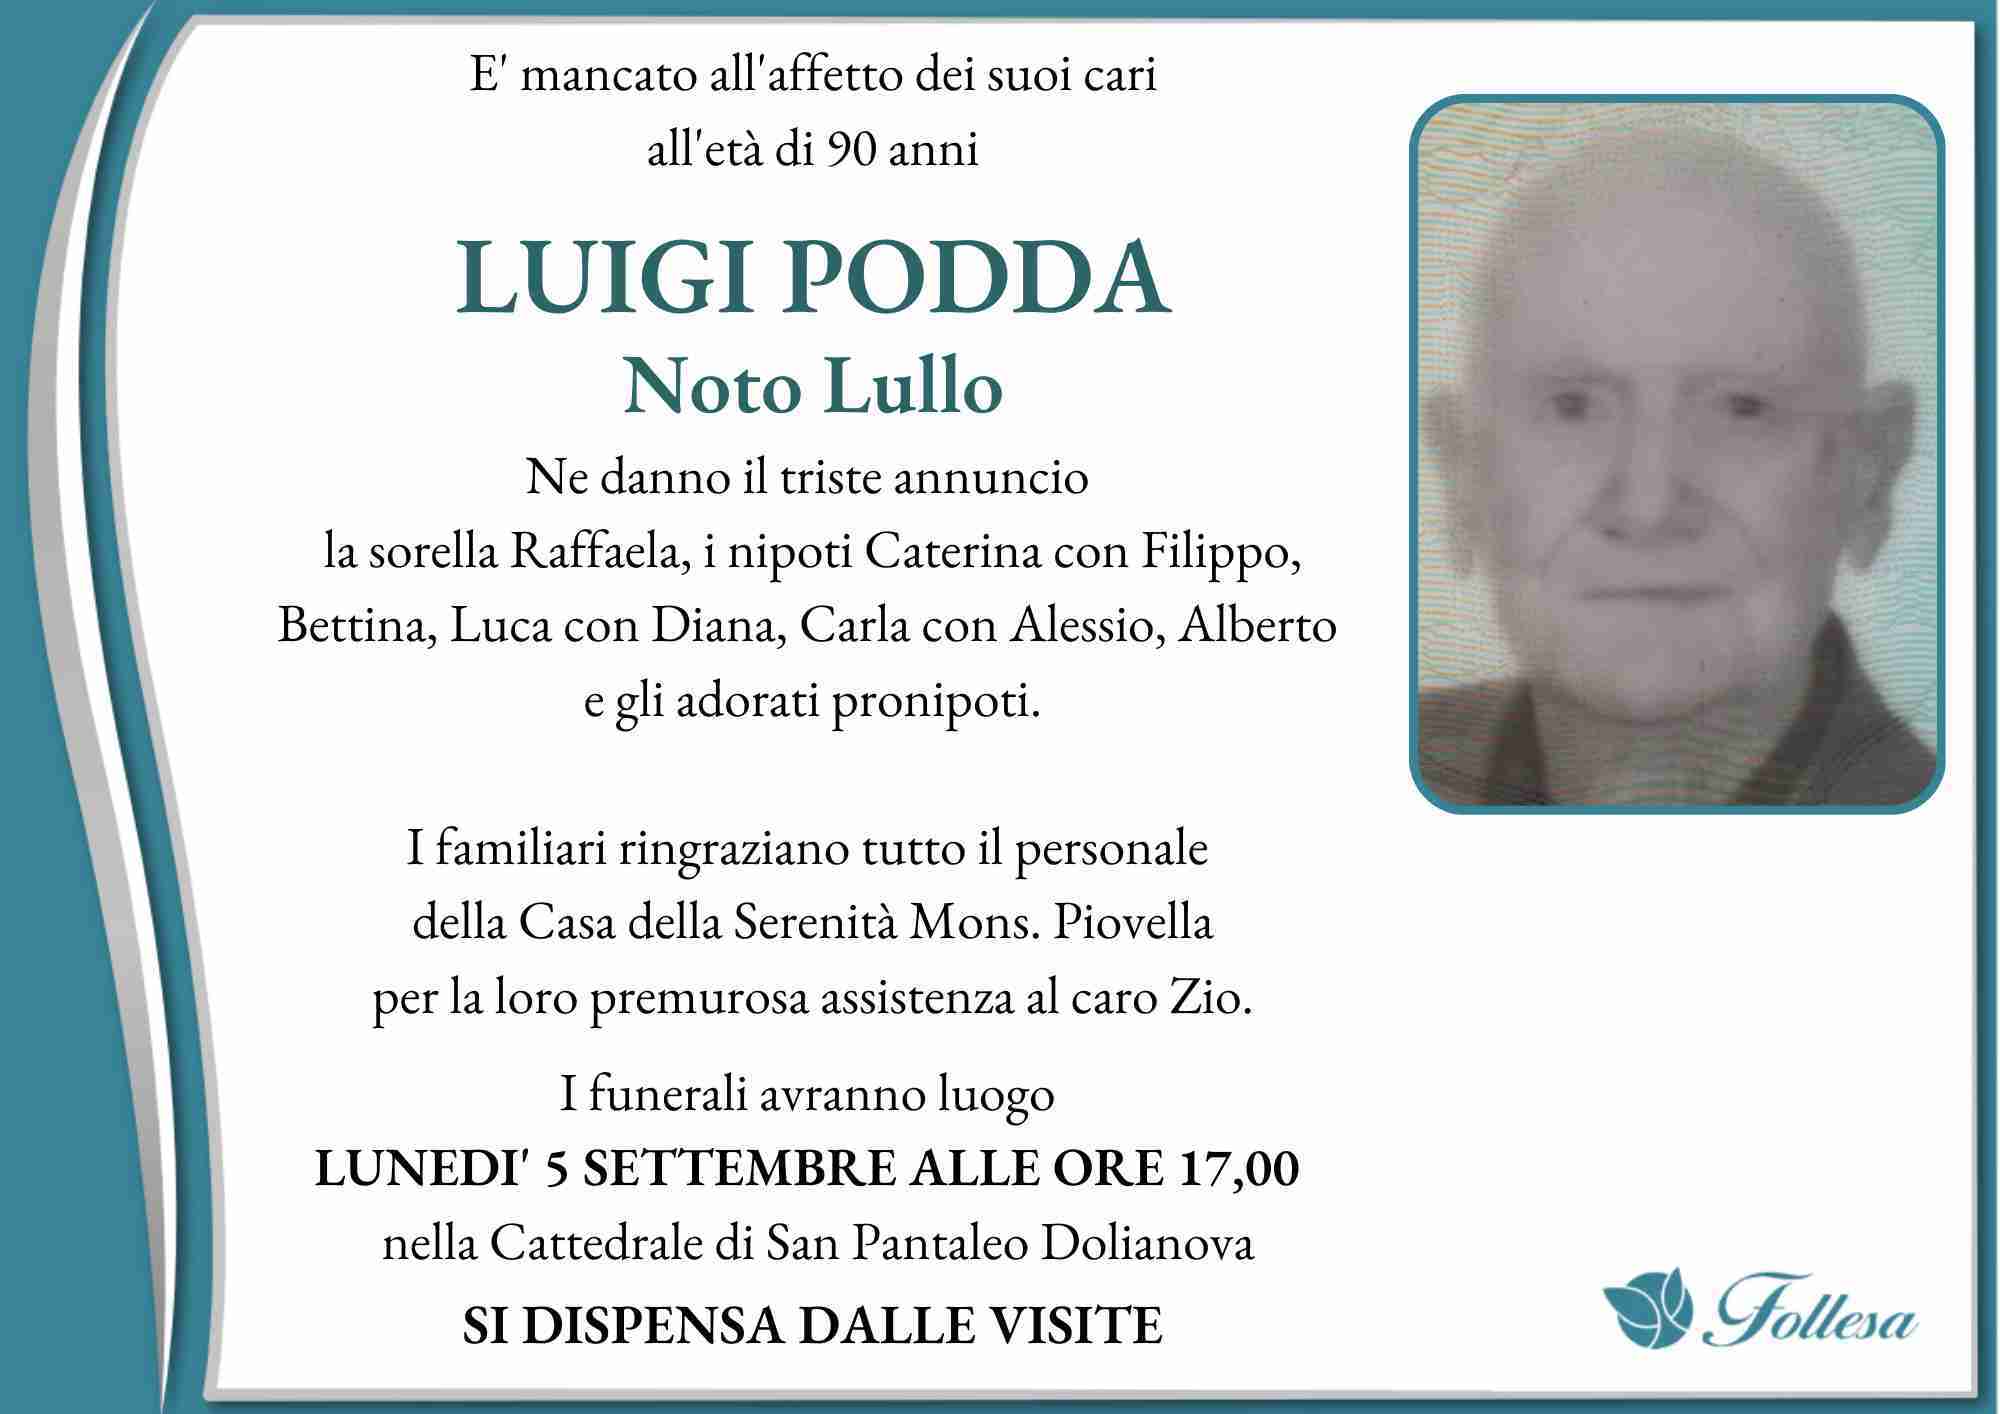 Luigi Podda